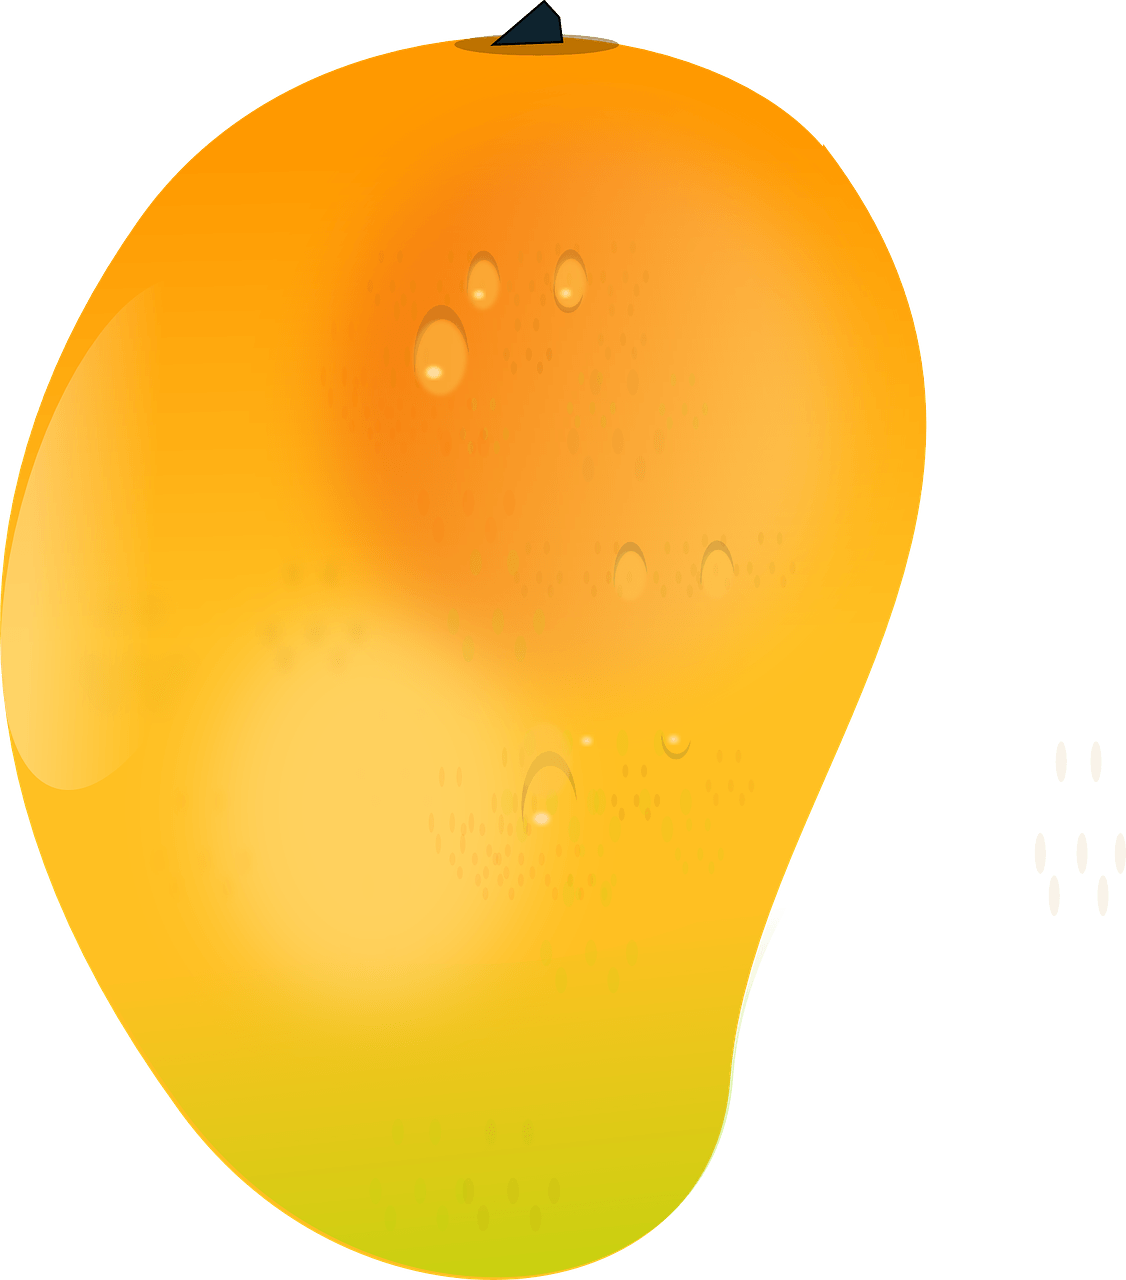 Juicy Mango Fruit Illustration PNG image